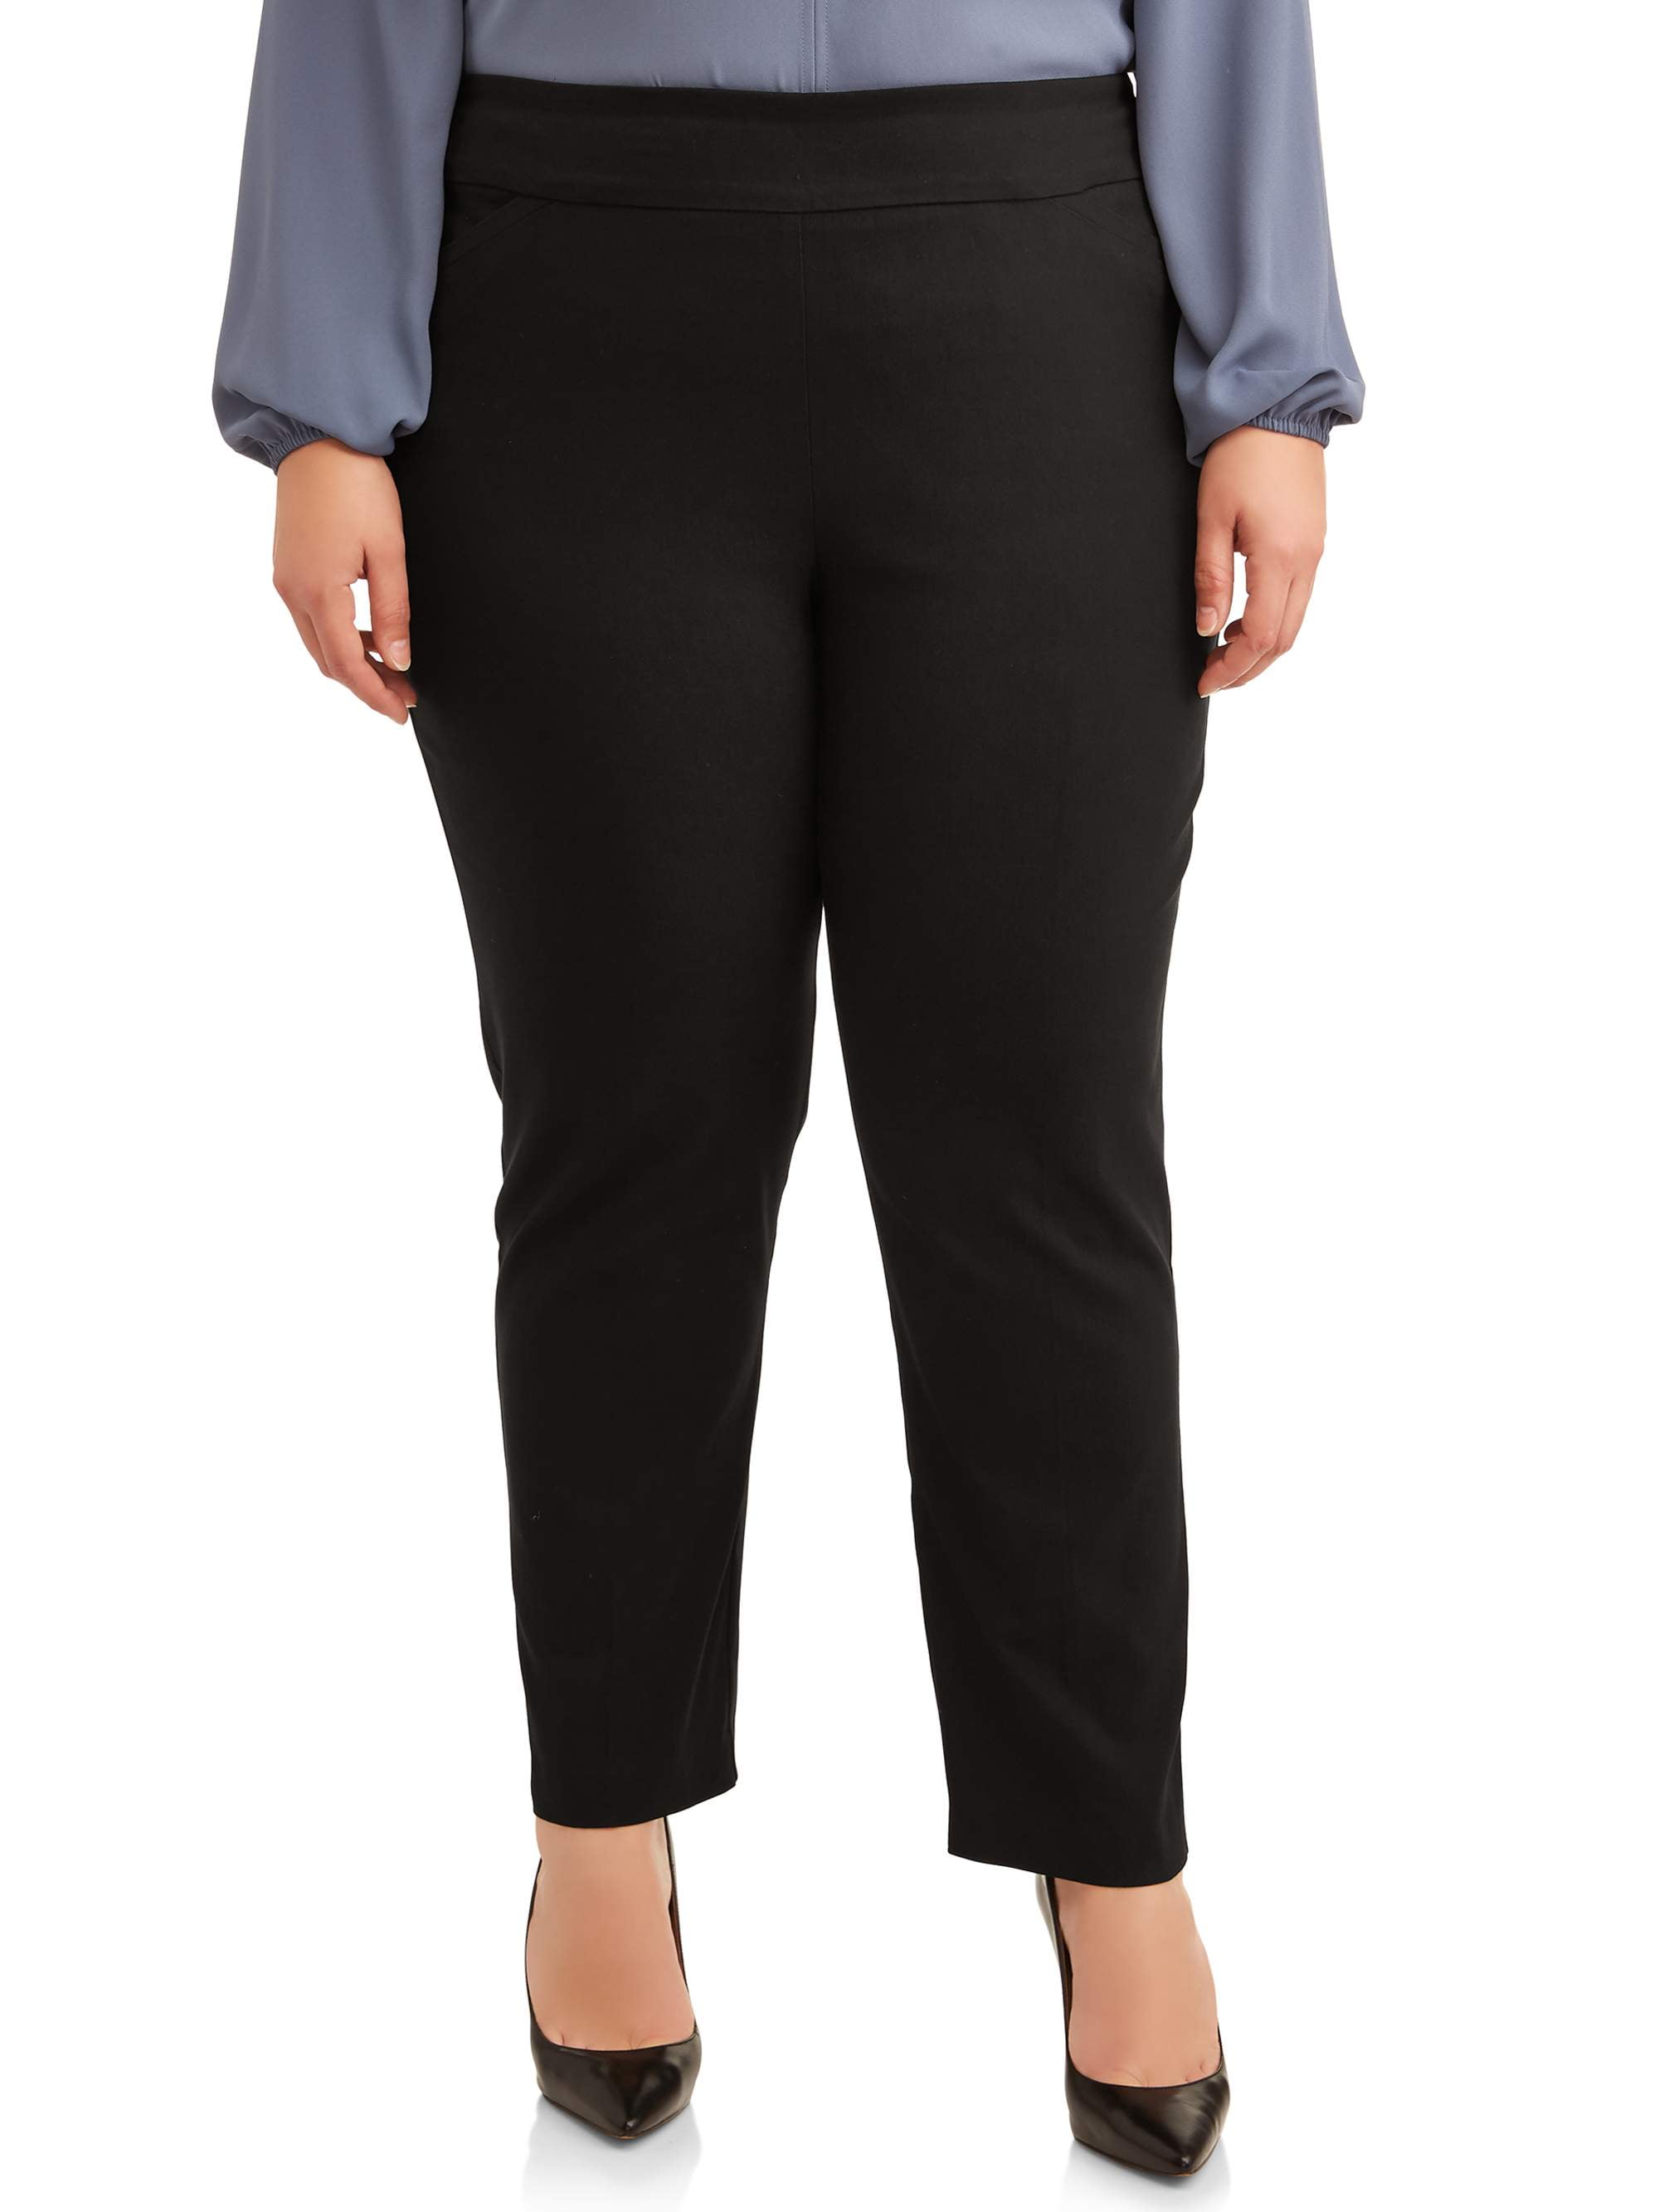 Terra & Sky Women's Plus Size Dress Pant with Stretch - Walmart.com